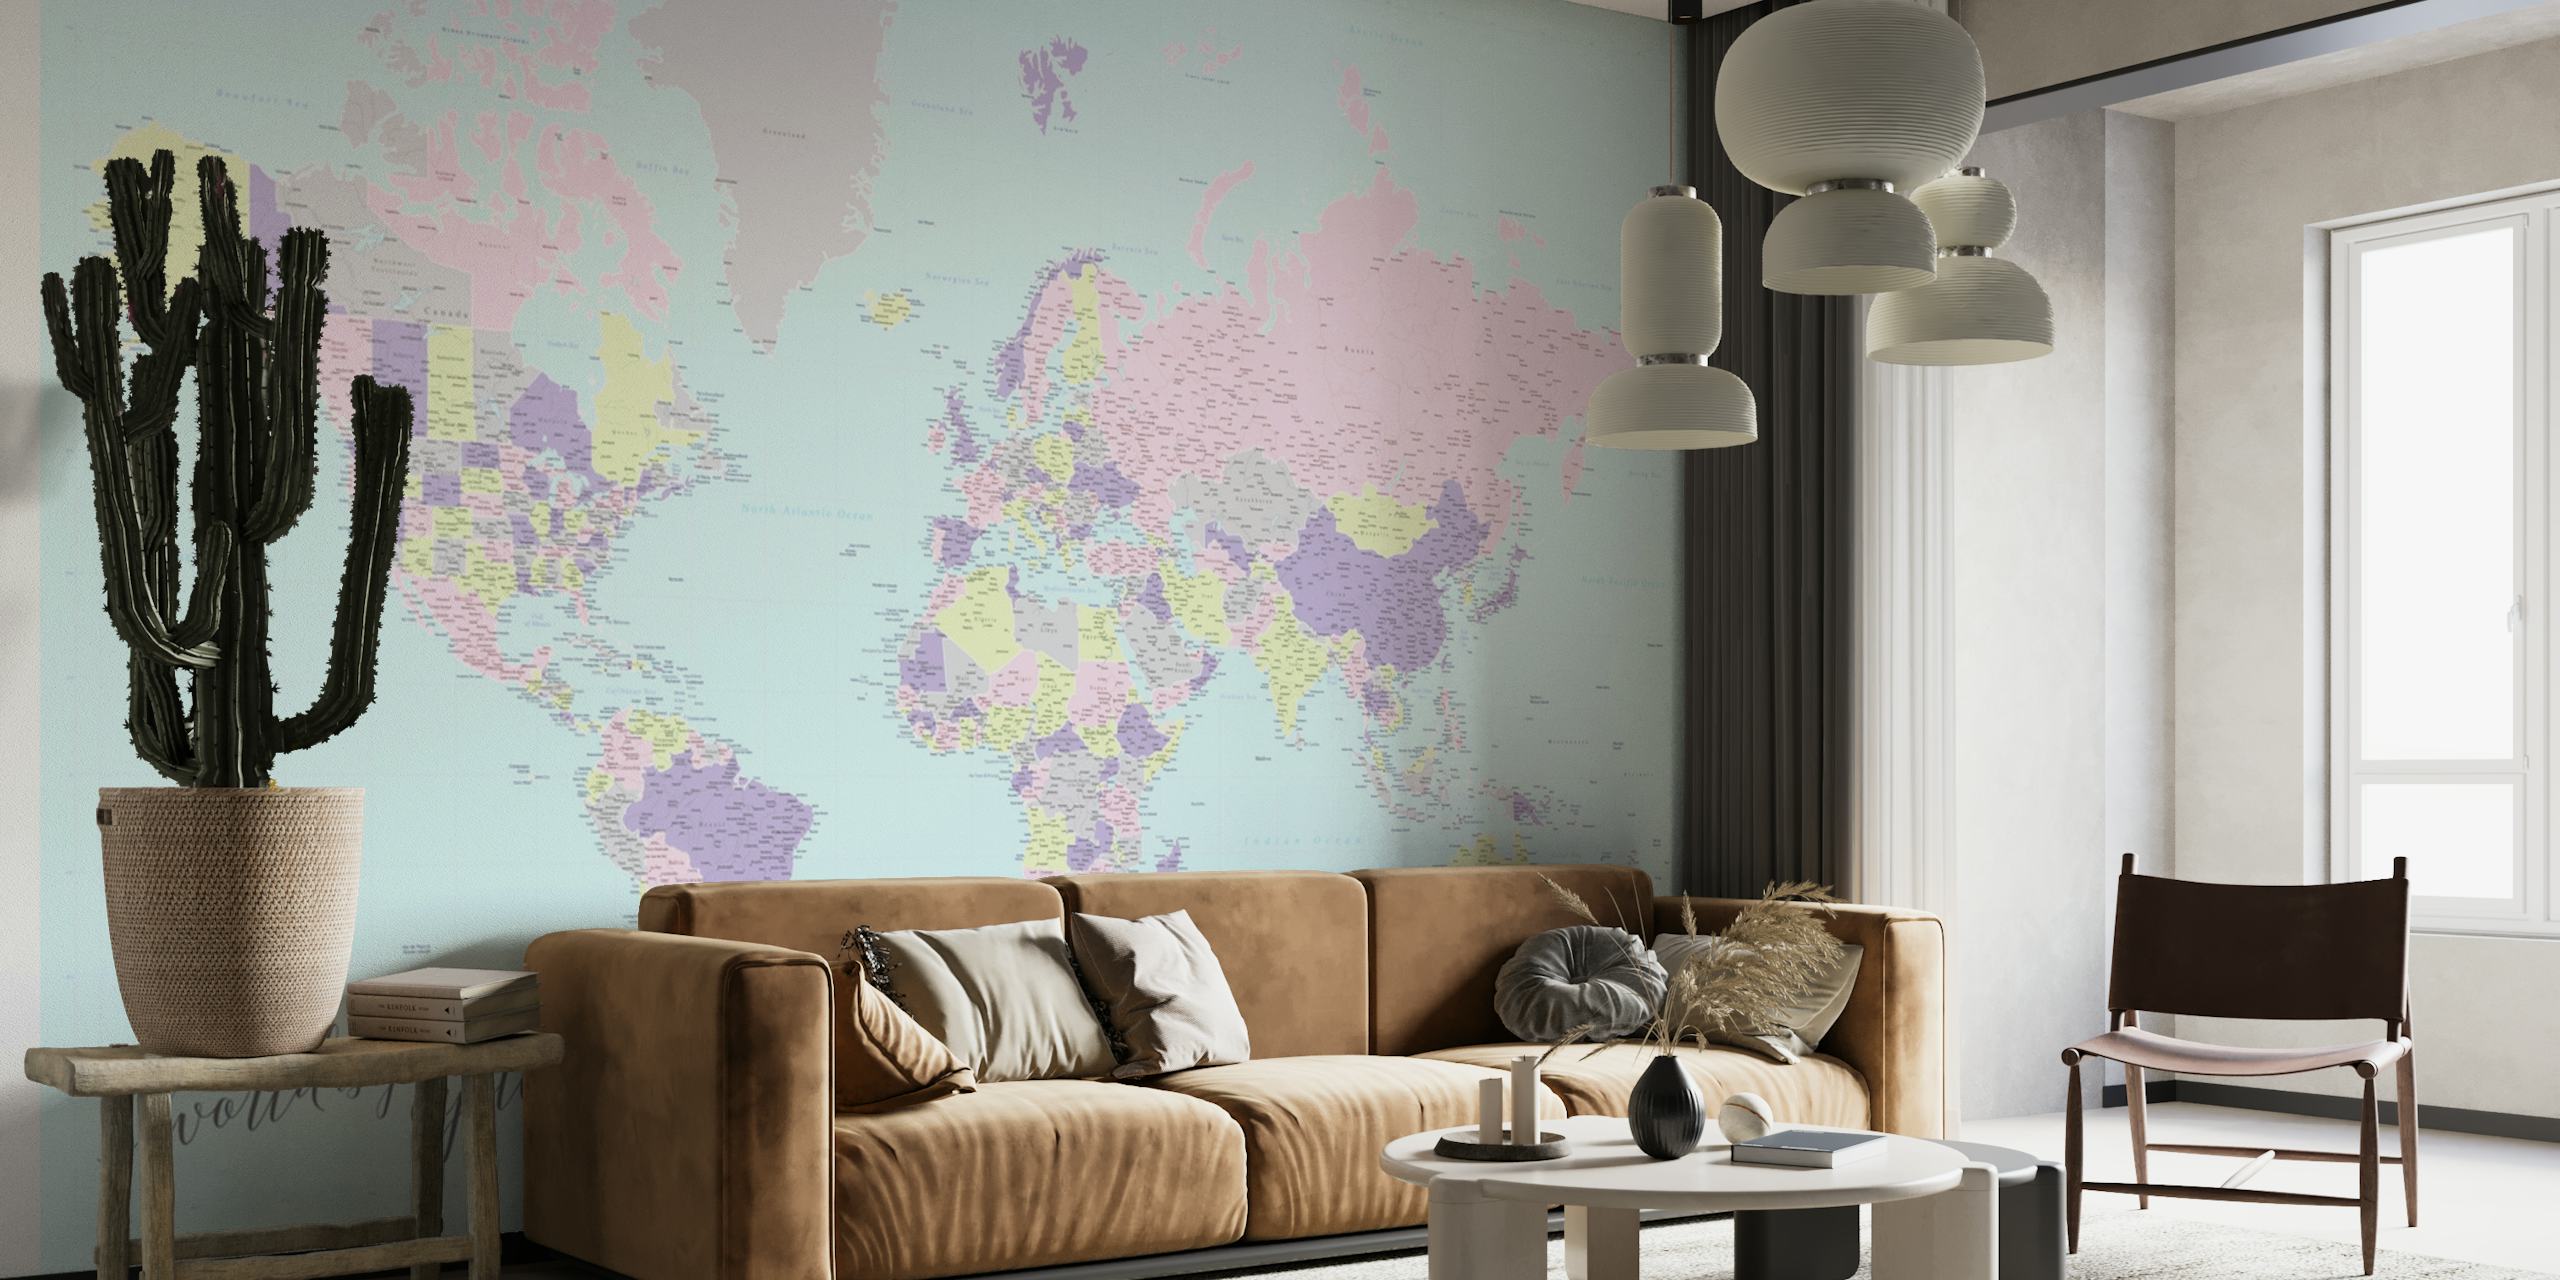 Mural de pared Hatsu con el mapa mundial de ostras en colores pastel y representaciones artísticas del continente